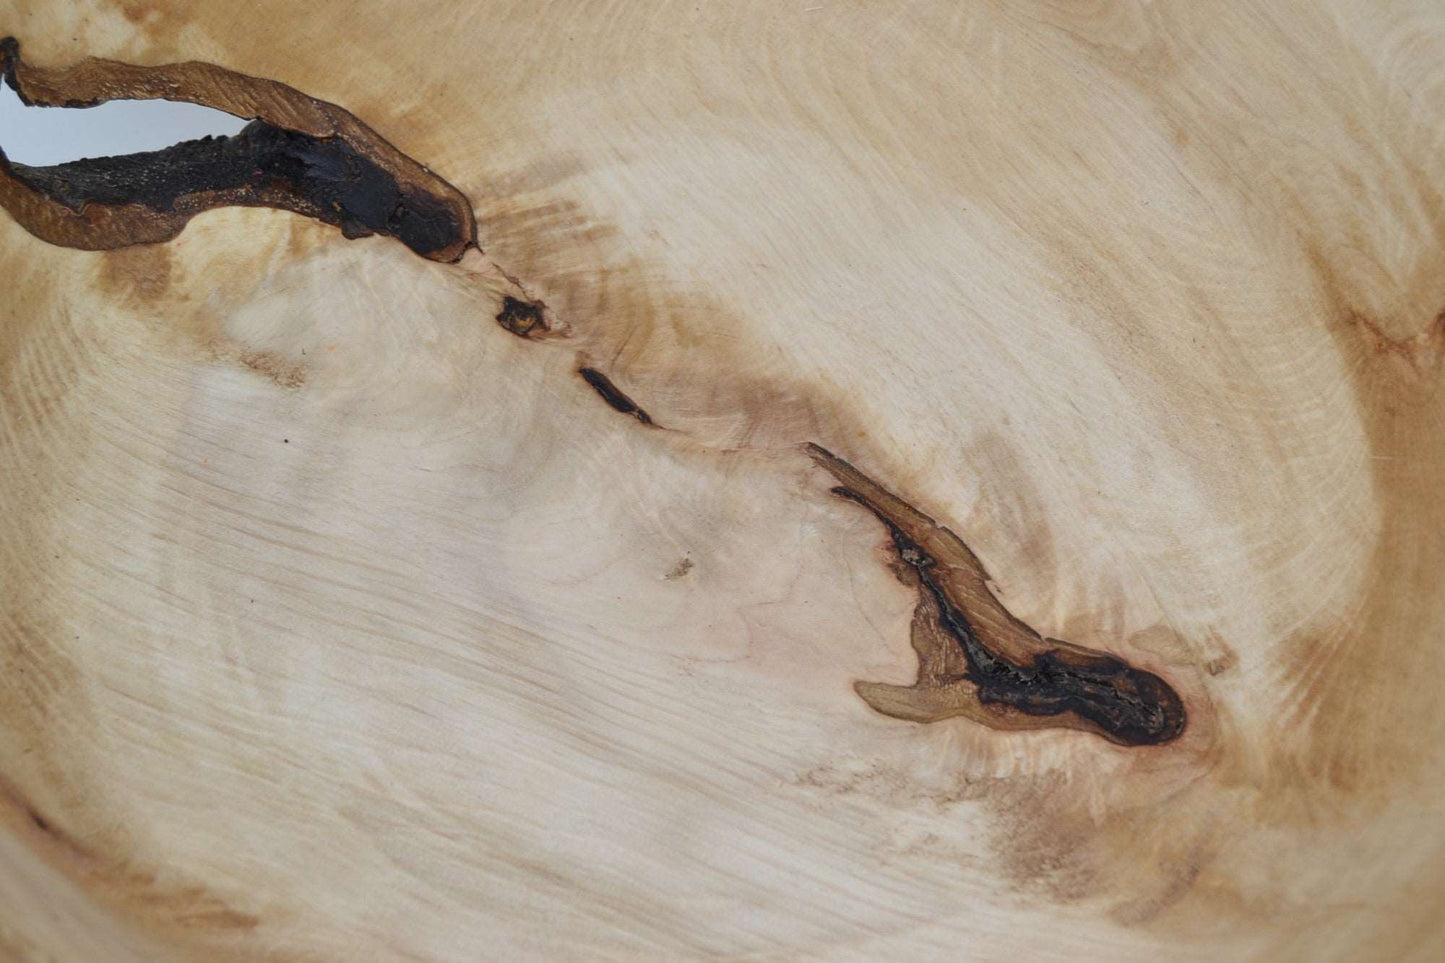 Holzschale aus Hainbuche mit Naturrand 28x27 cm